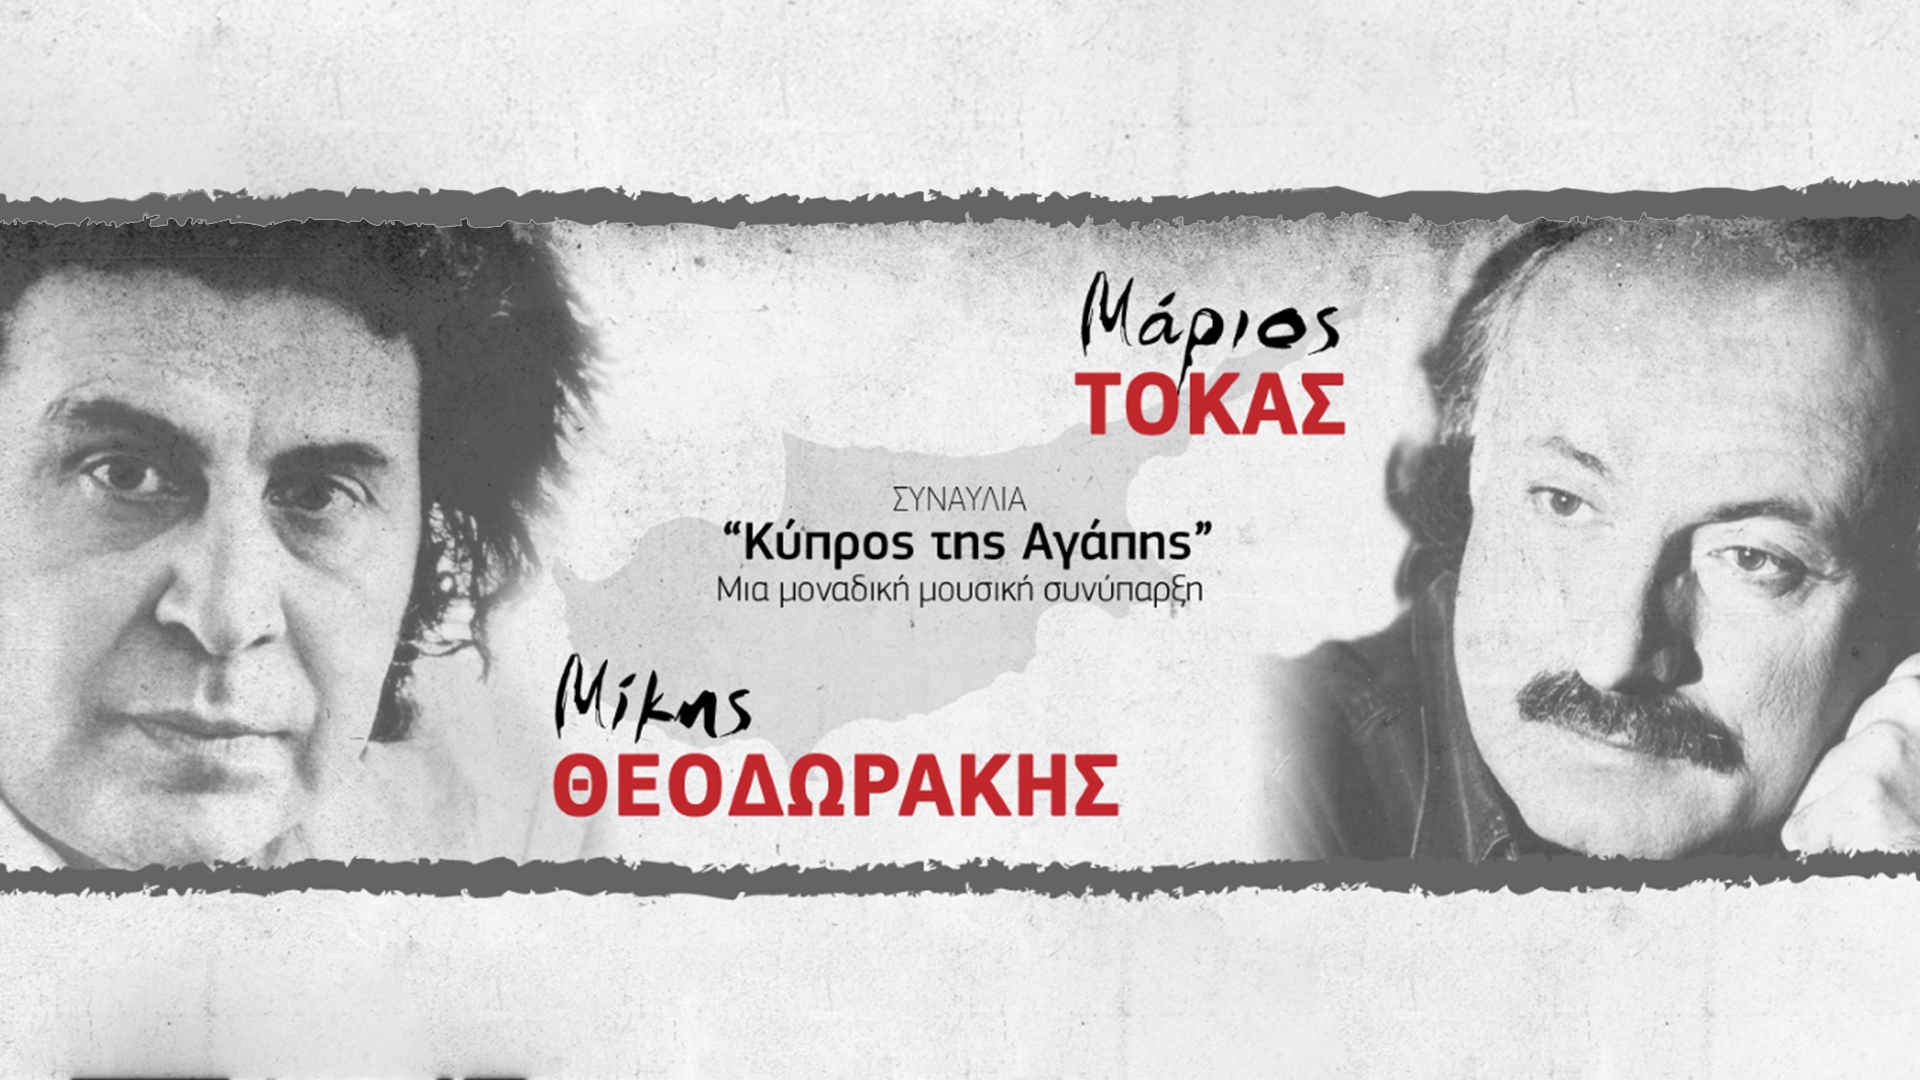 Μίκης Θεοδωράκης - Μάριος Τόκας: ''Κύπρος της Αγάπης'' - Μια μοναδική μουσική συνάντηση που δεν πρέπει να χάσεις